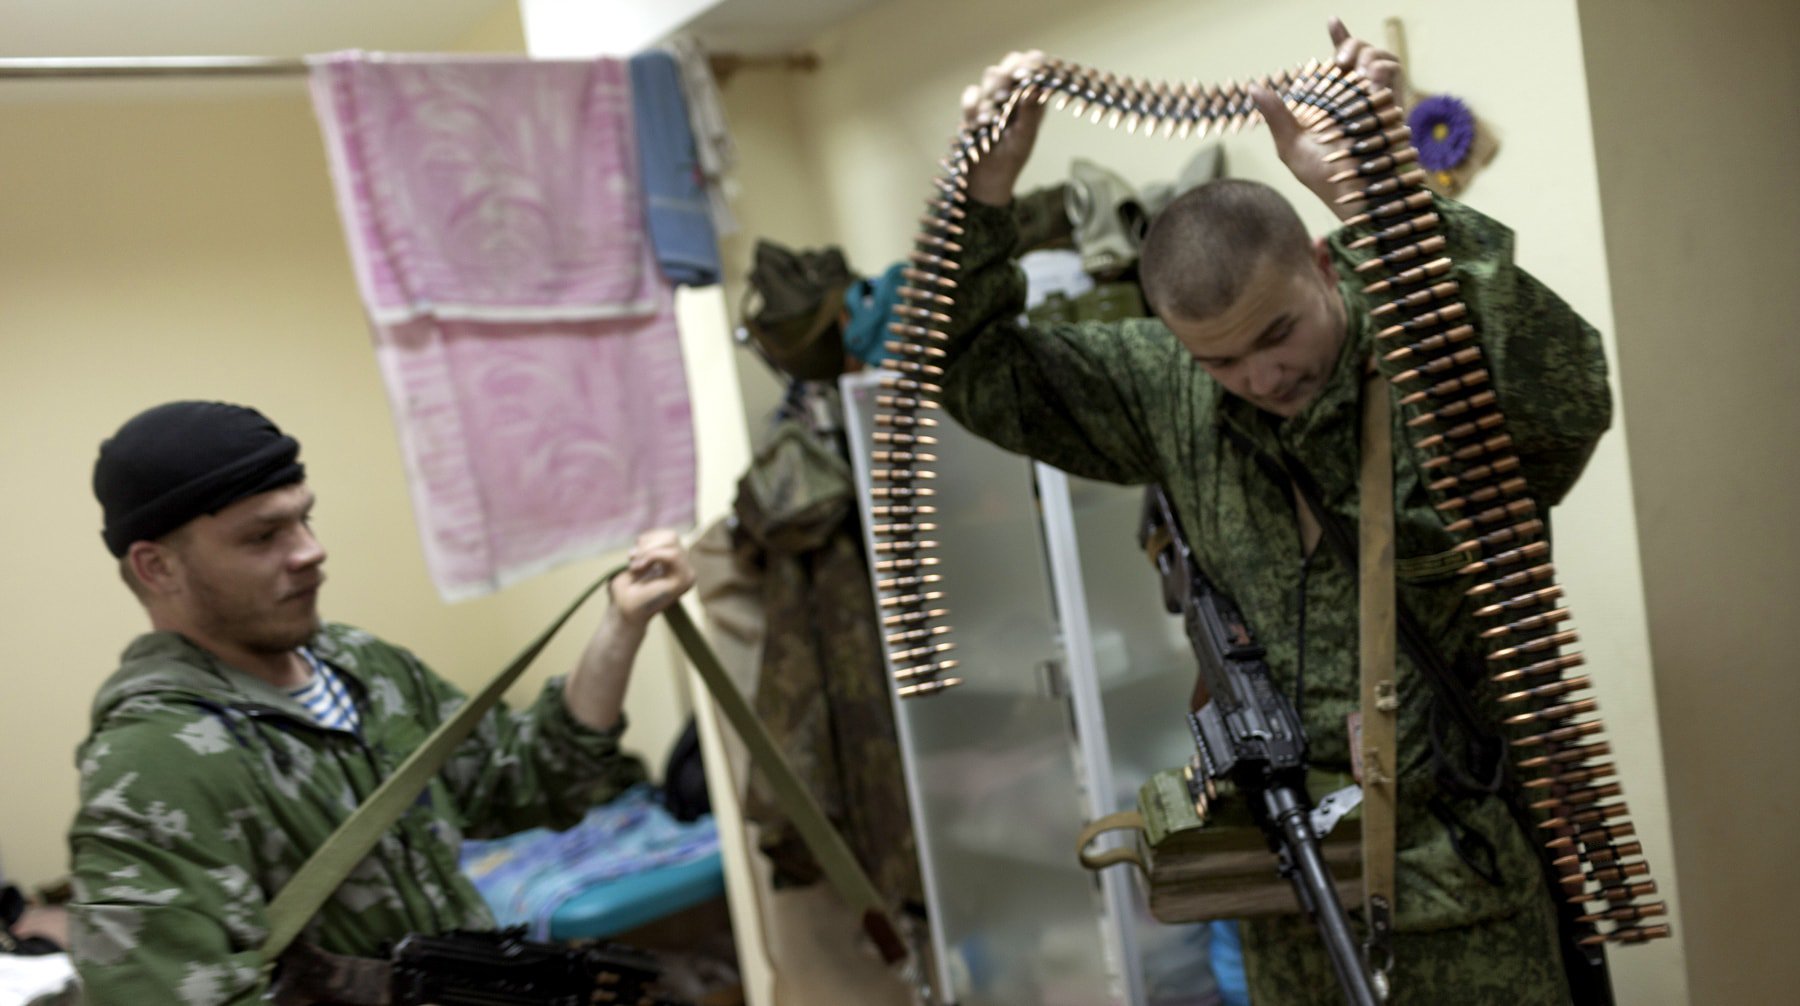 Dailystorm - «Минские соглашения мертвы». Зачем США подталкивают Украину к войне?